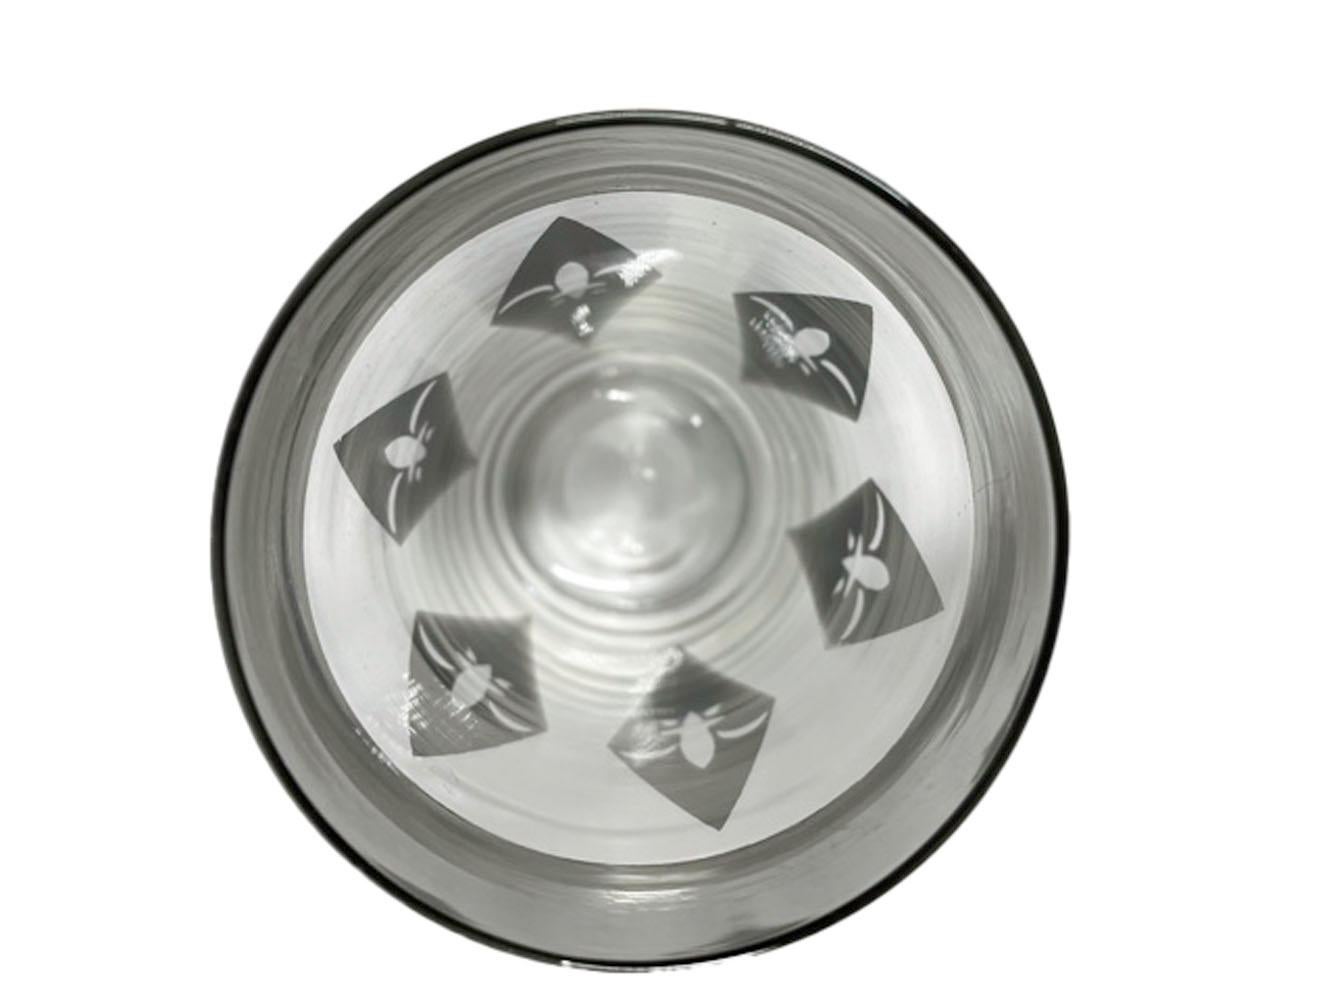 Ensemble de 8 verres highball vintage en argent décorés d'une fleur de lis dans des diamants allongés en argent sous une large bande de bord.